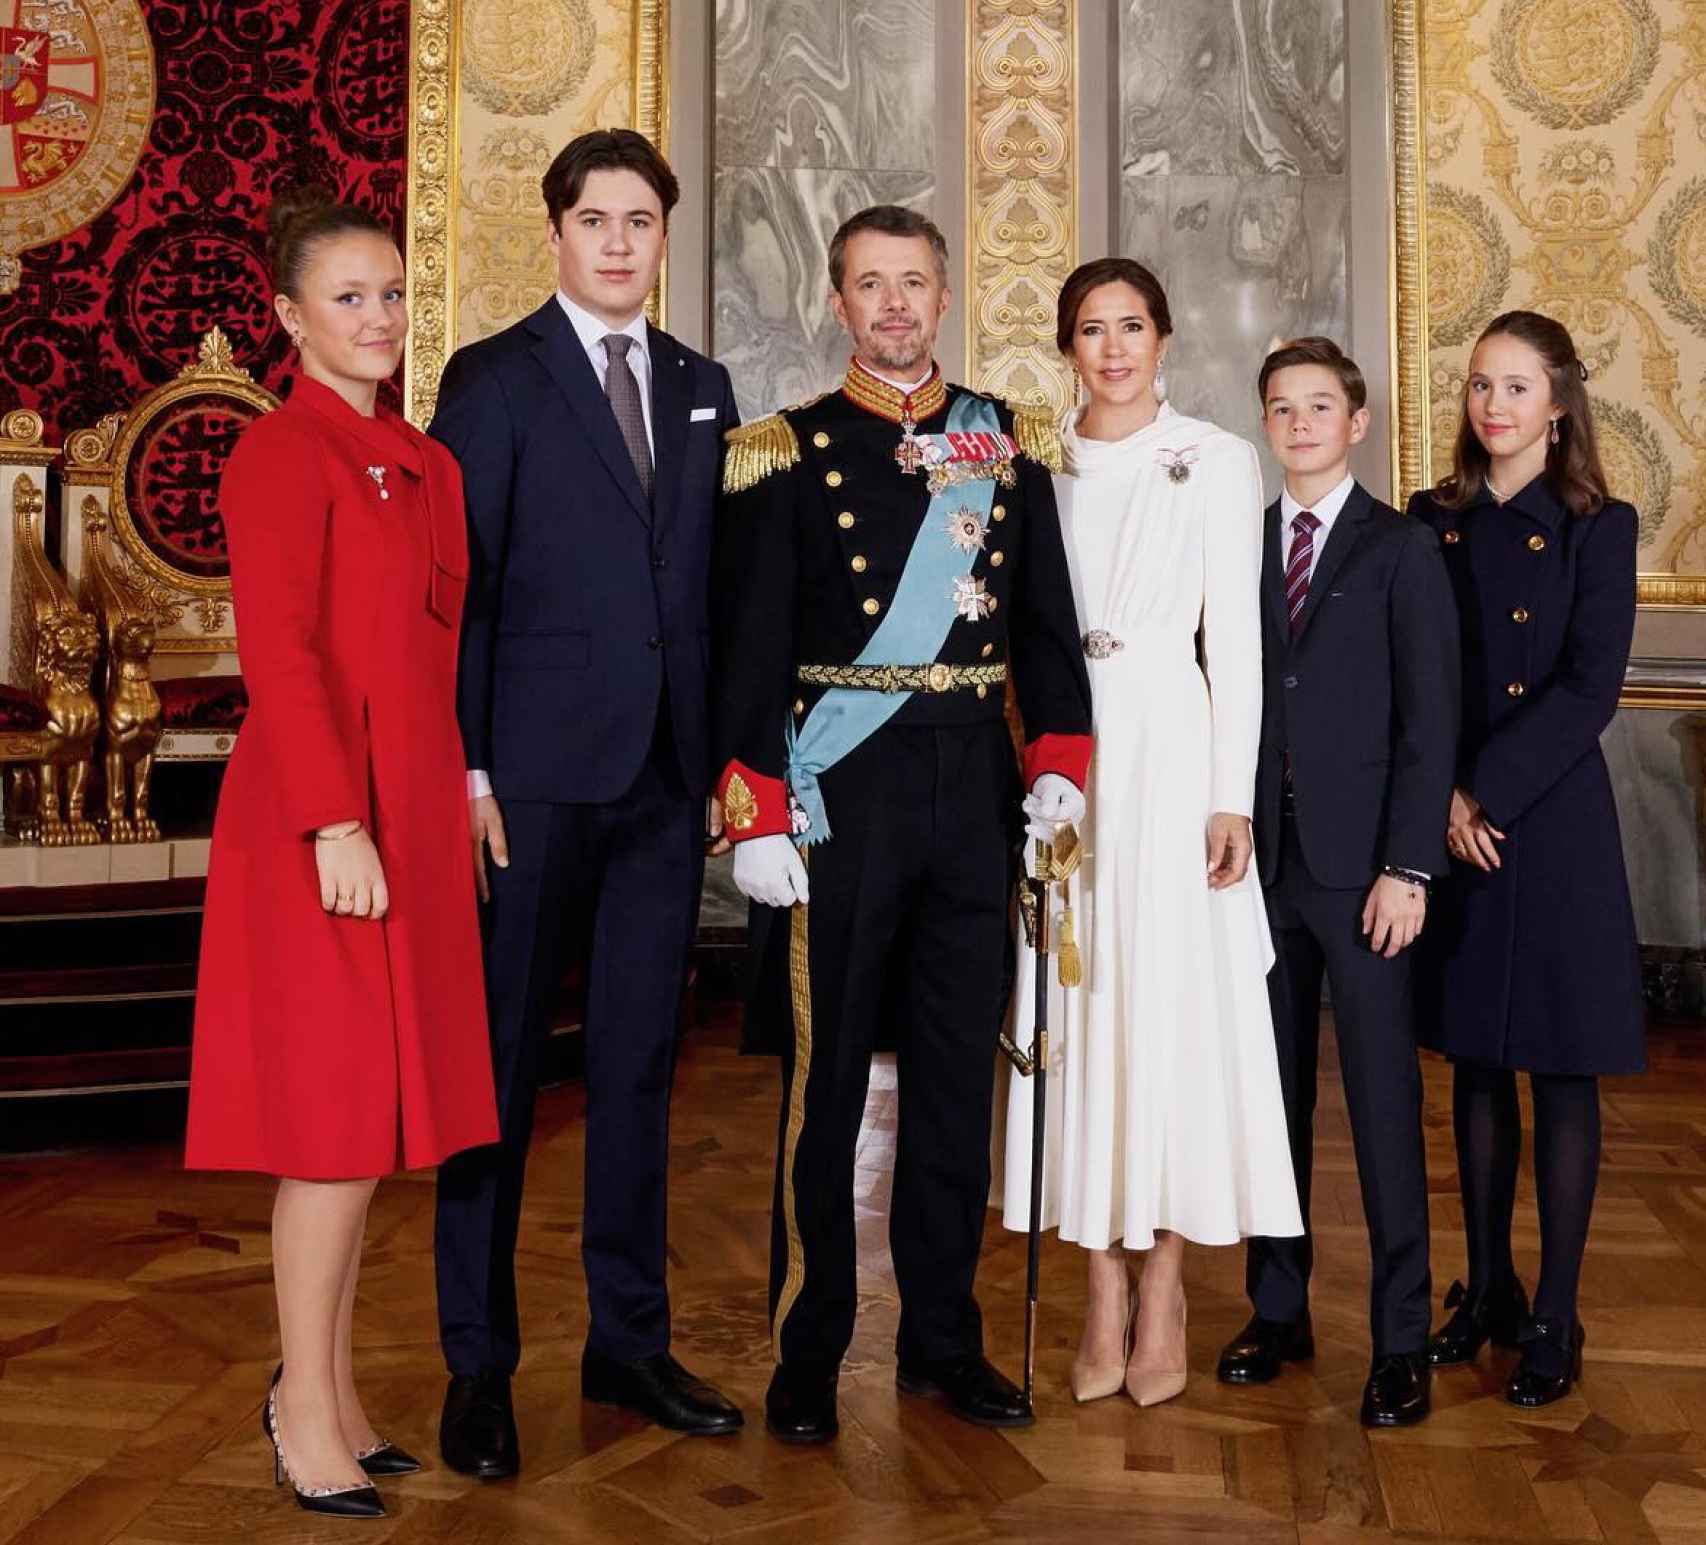 La familia real danesa posa en el salón del trono.